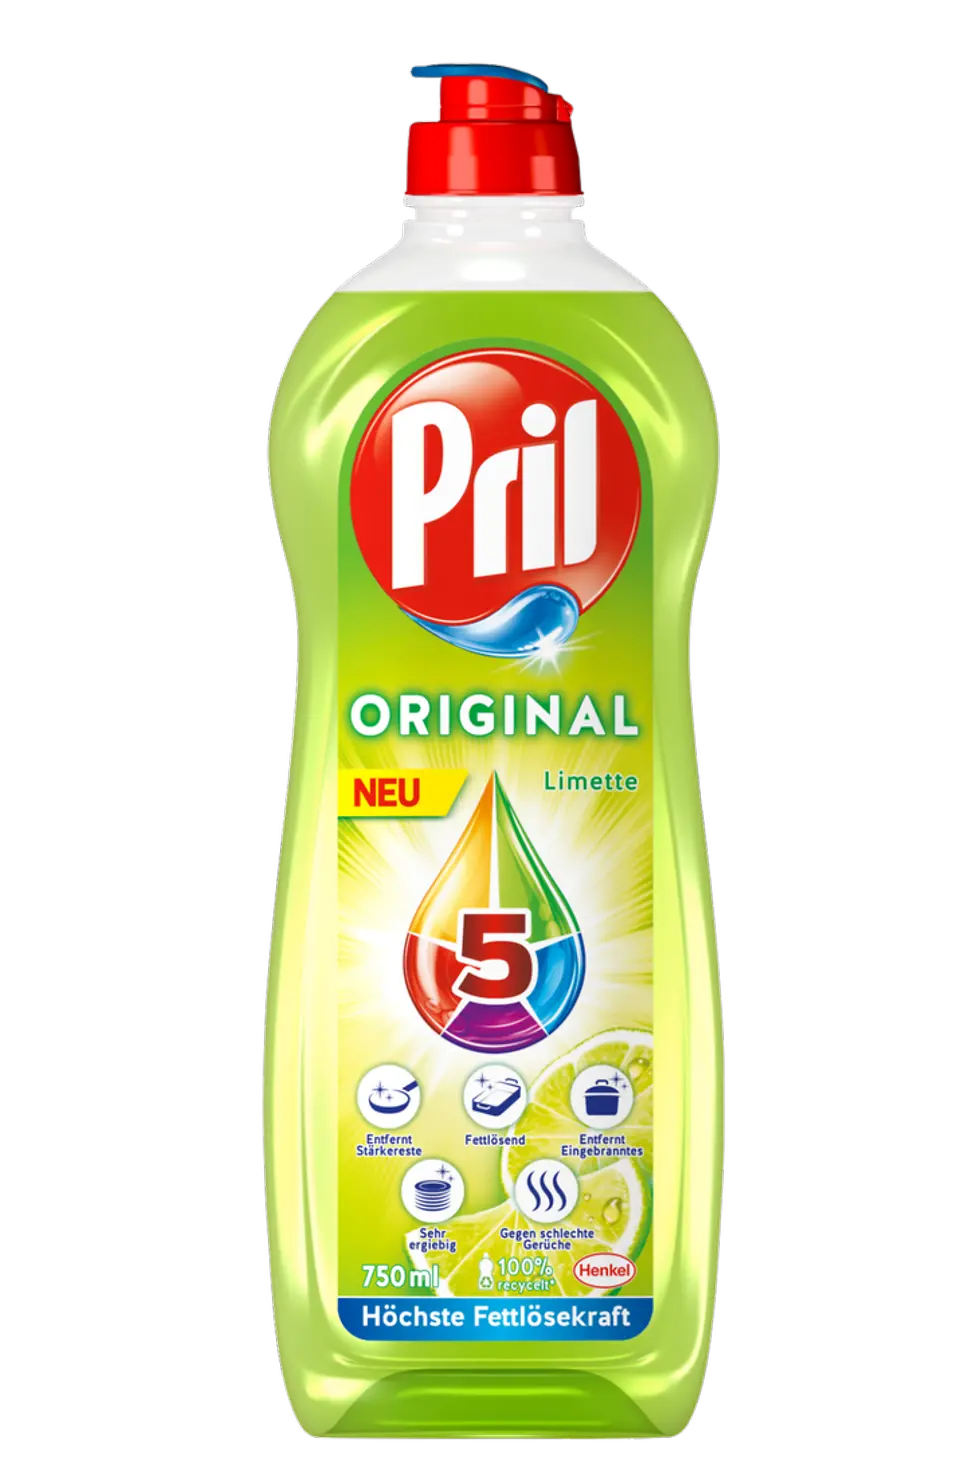 Das neue Pril 5 Original Limette